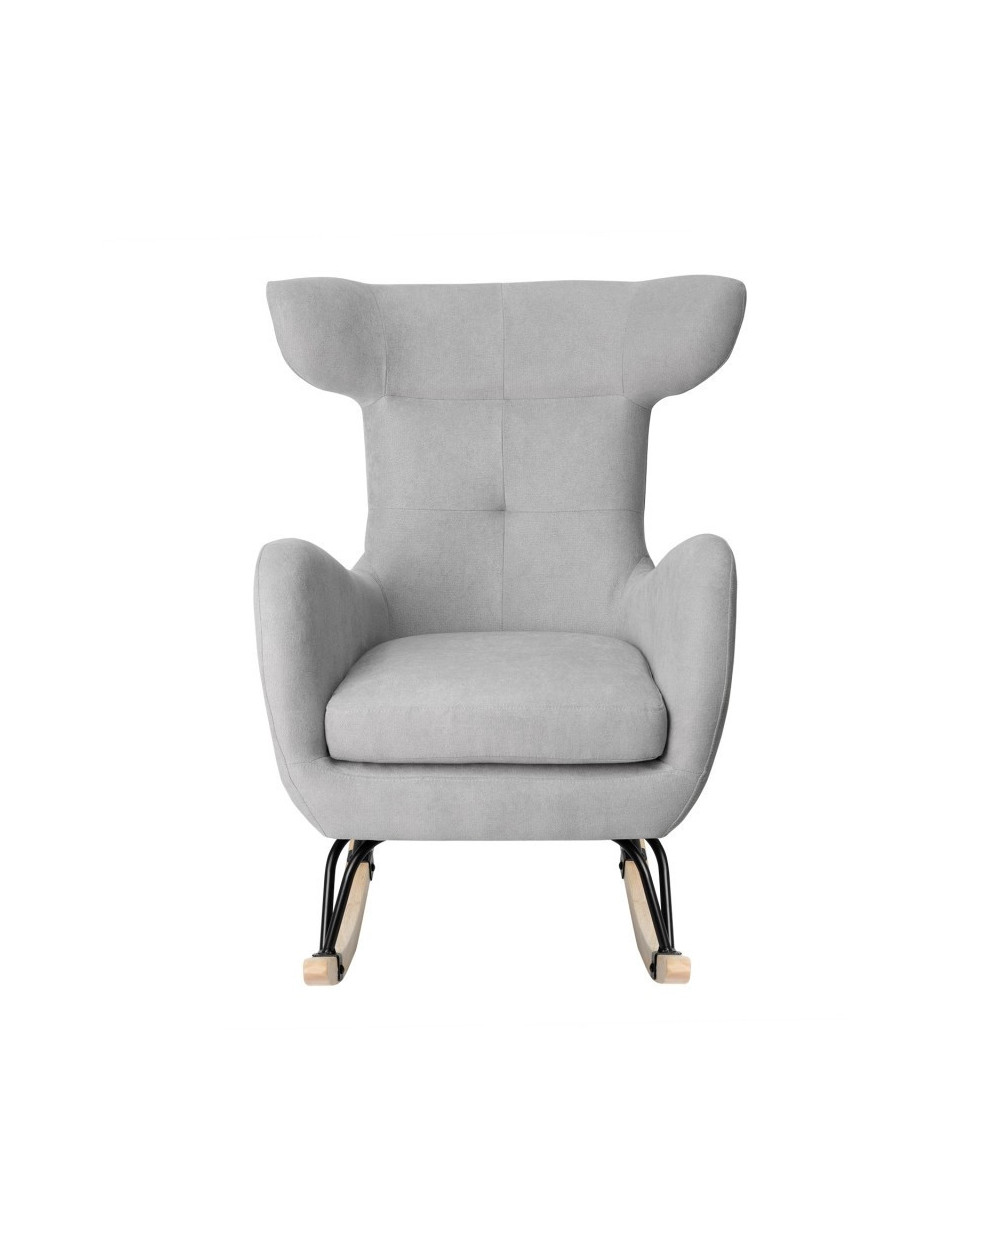 Cadeira Leeds DUDECO - Material do assento: Aço reforçado
Material da estrutura: Aço reforçado
Altura total: 86 cm
Profundida